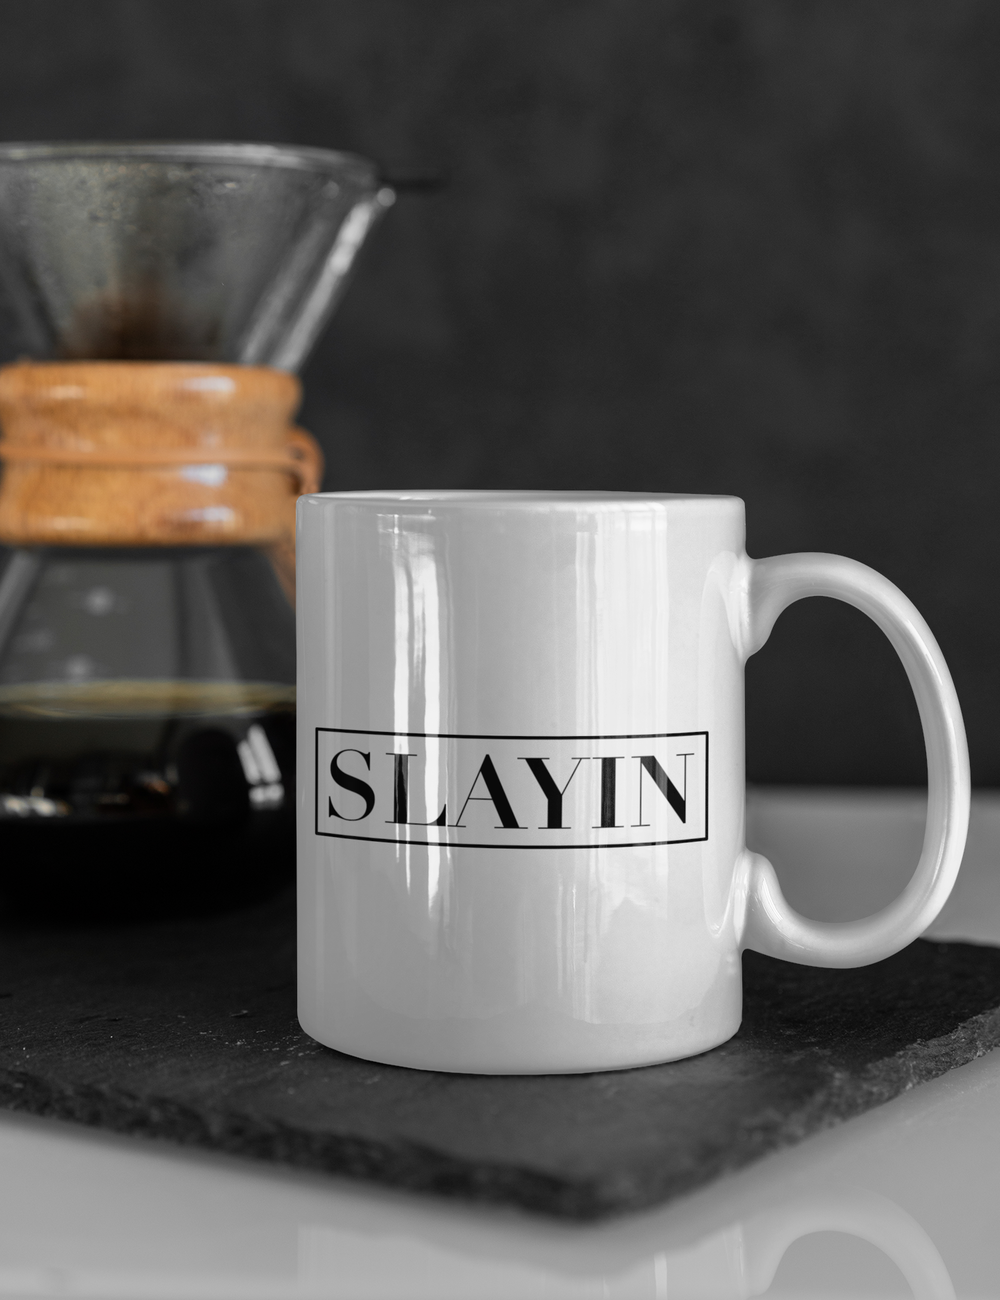 Slayin Classic Coffee Mug OniTakai